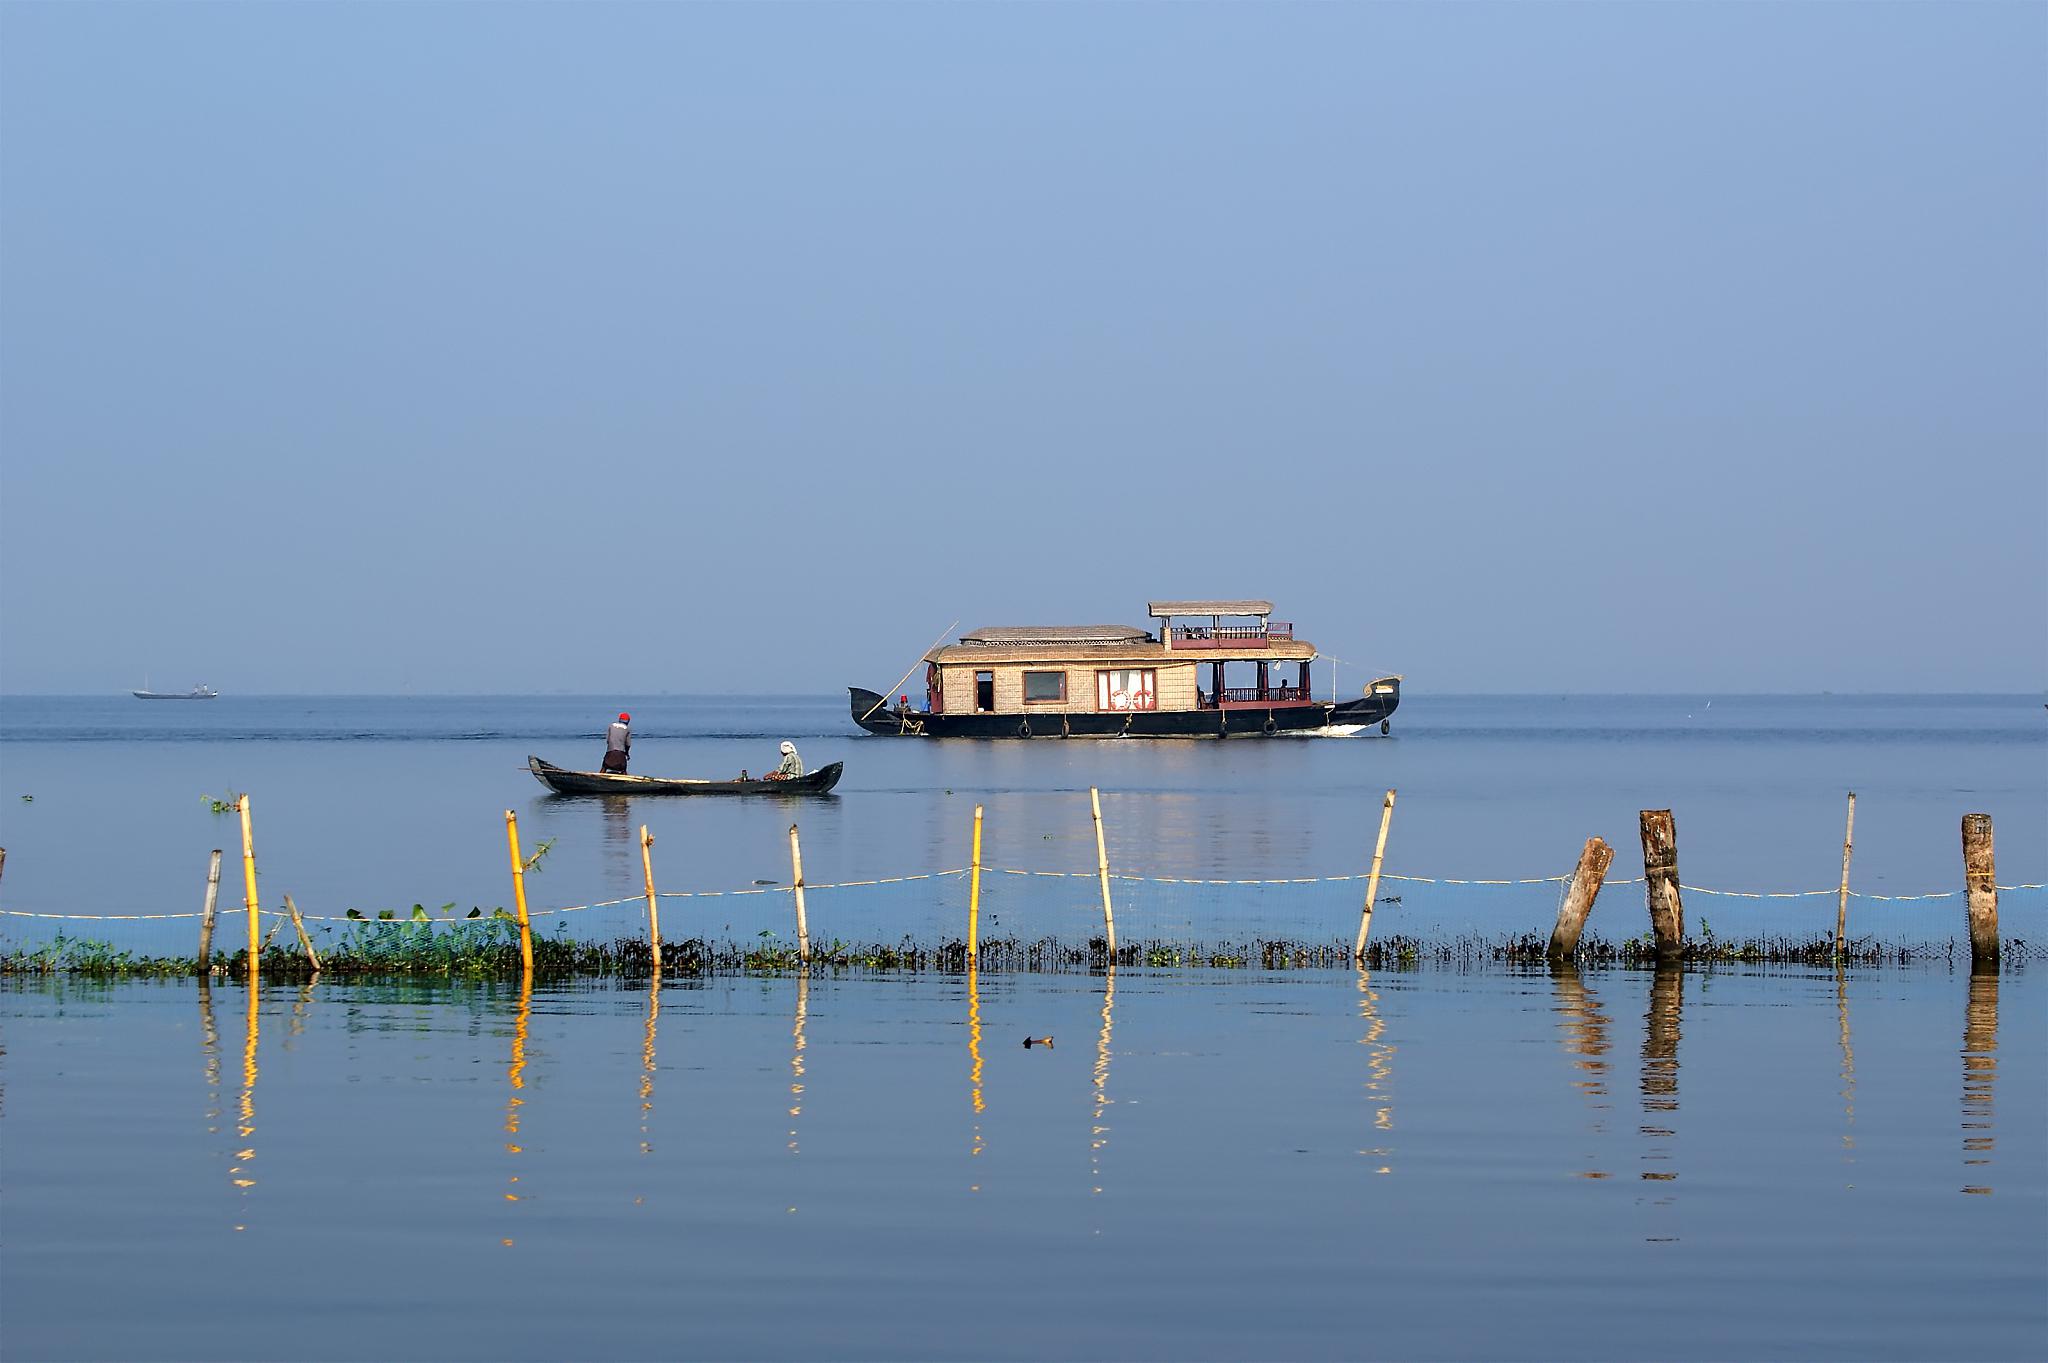 走进巢湖,领略自然魅力 巢湖,位于中国安徽省合肥市,是中国五大淡水湖